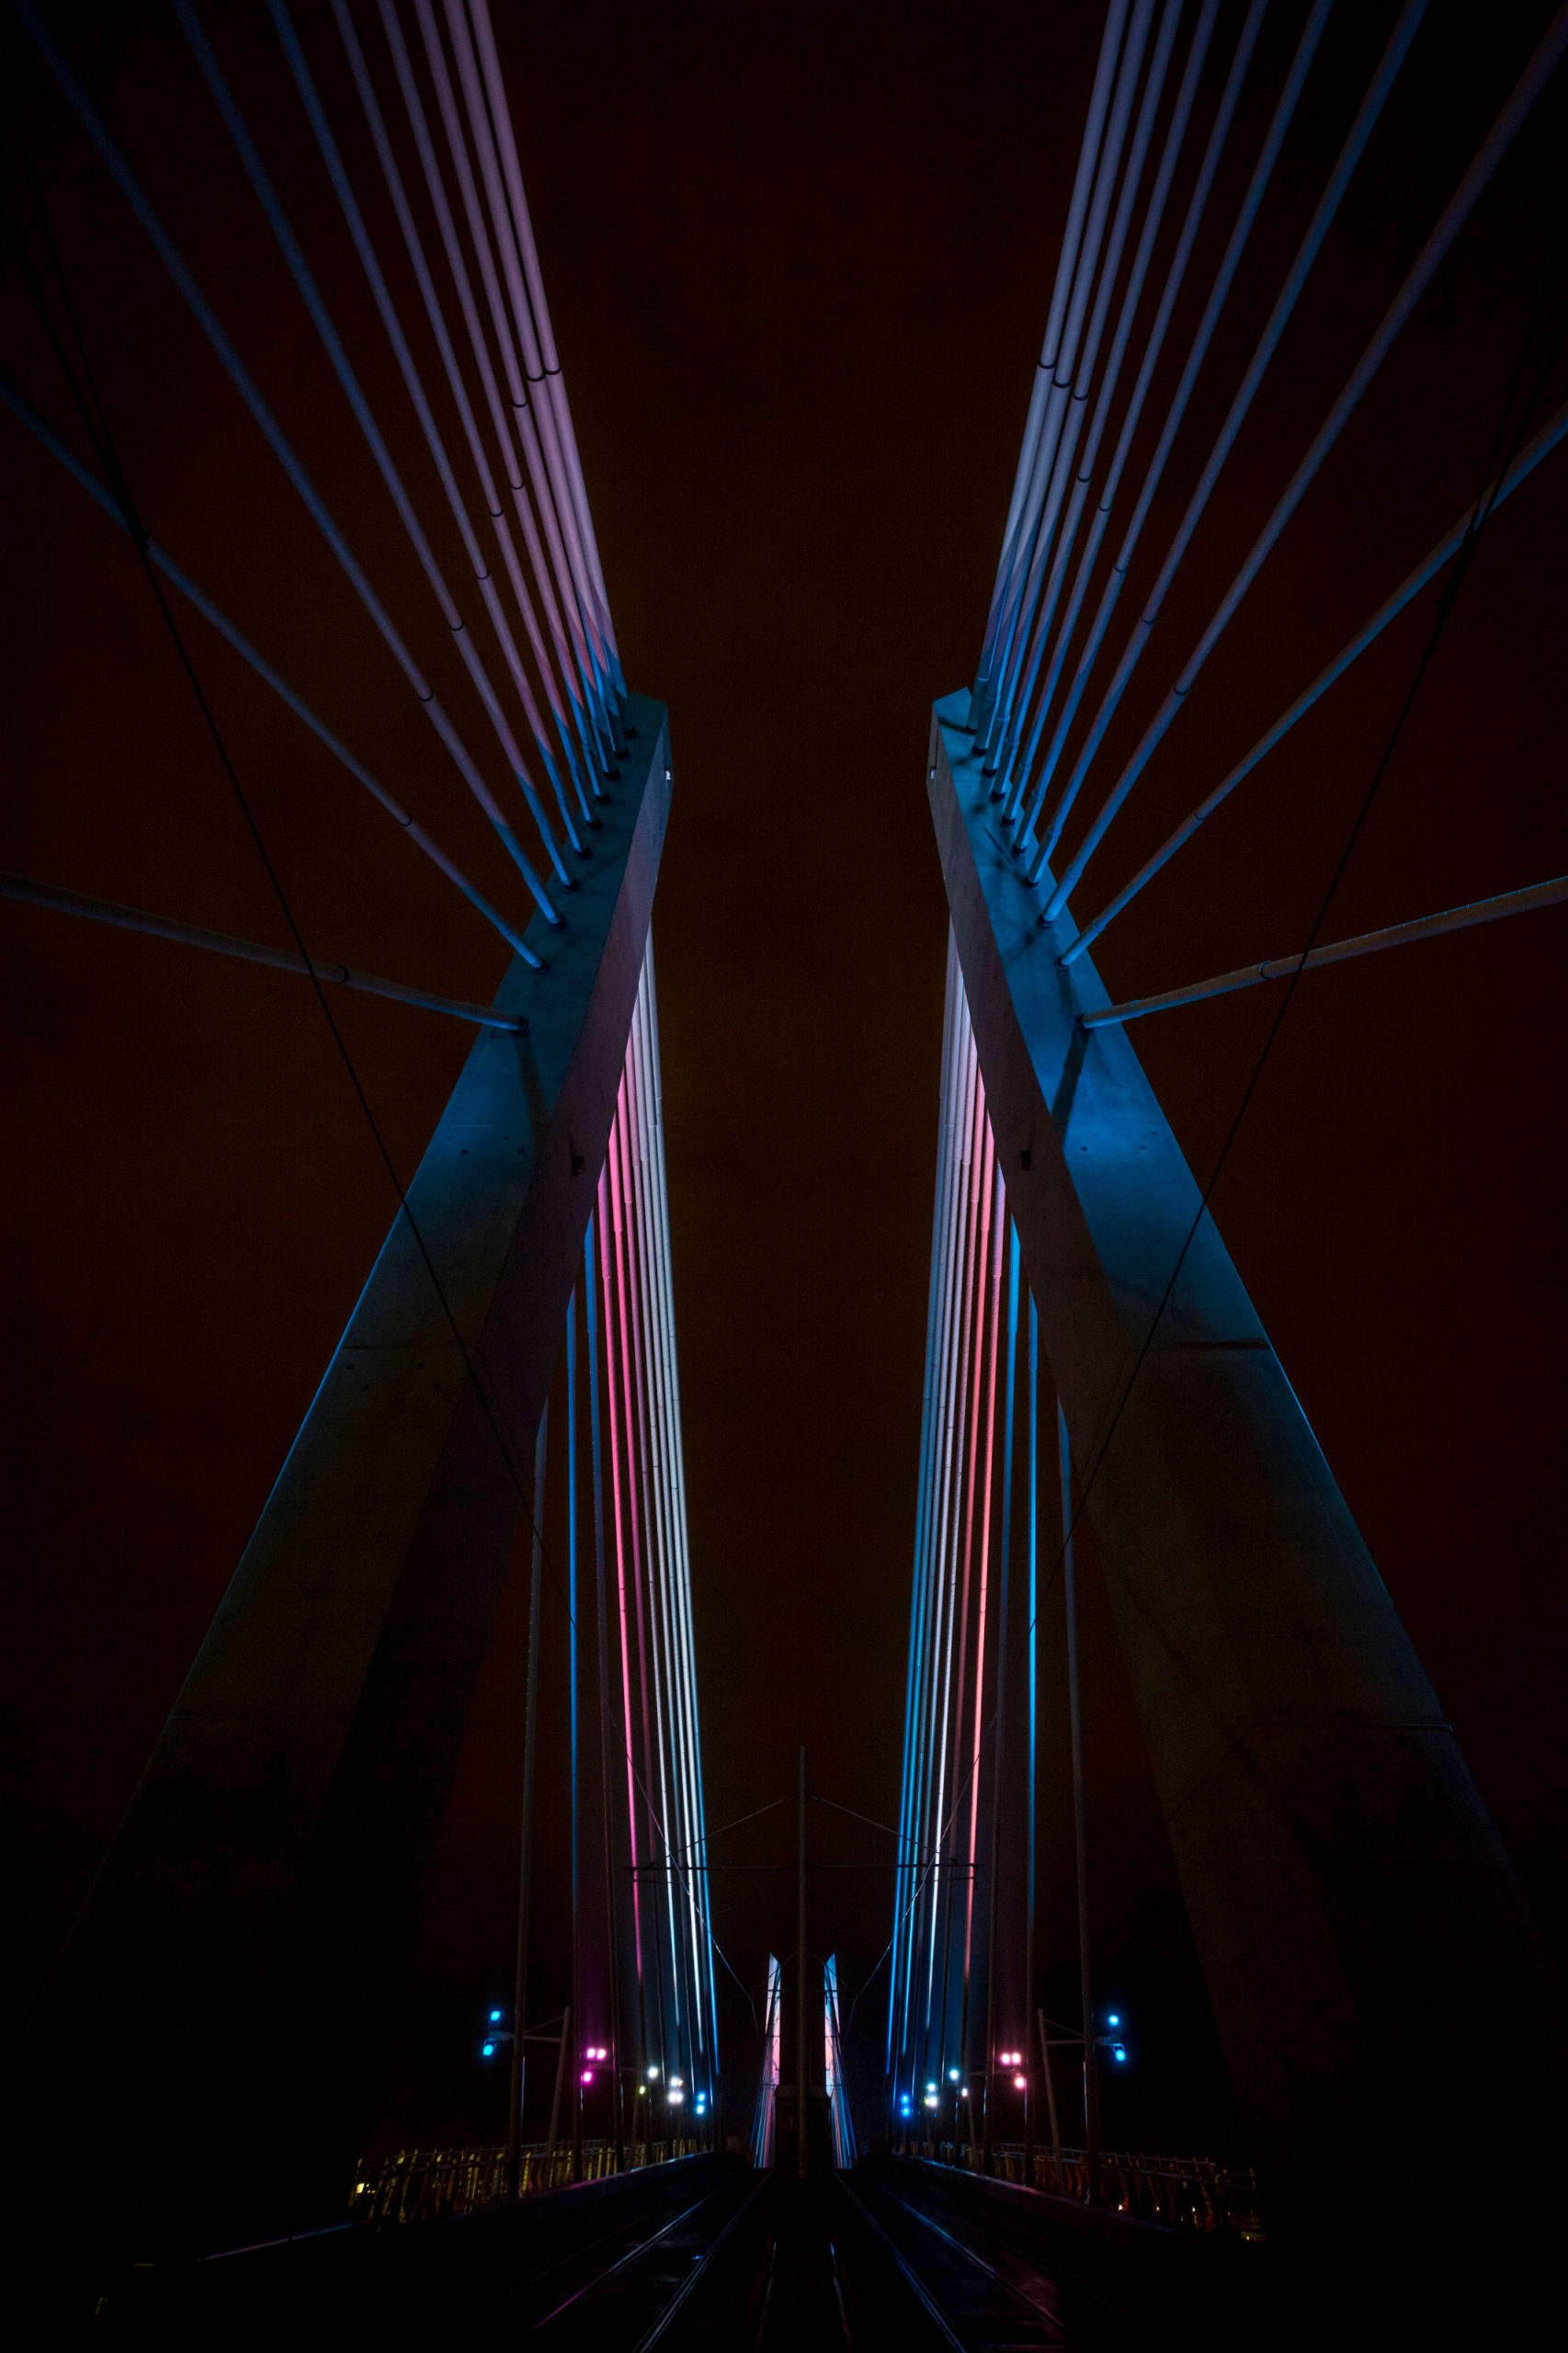 Tilikum Light: An Illuminating Conversation Between a River and a Bridge